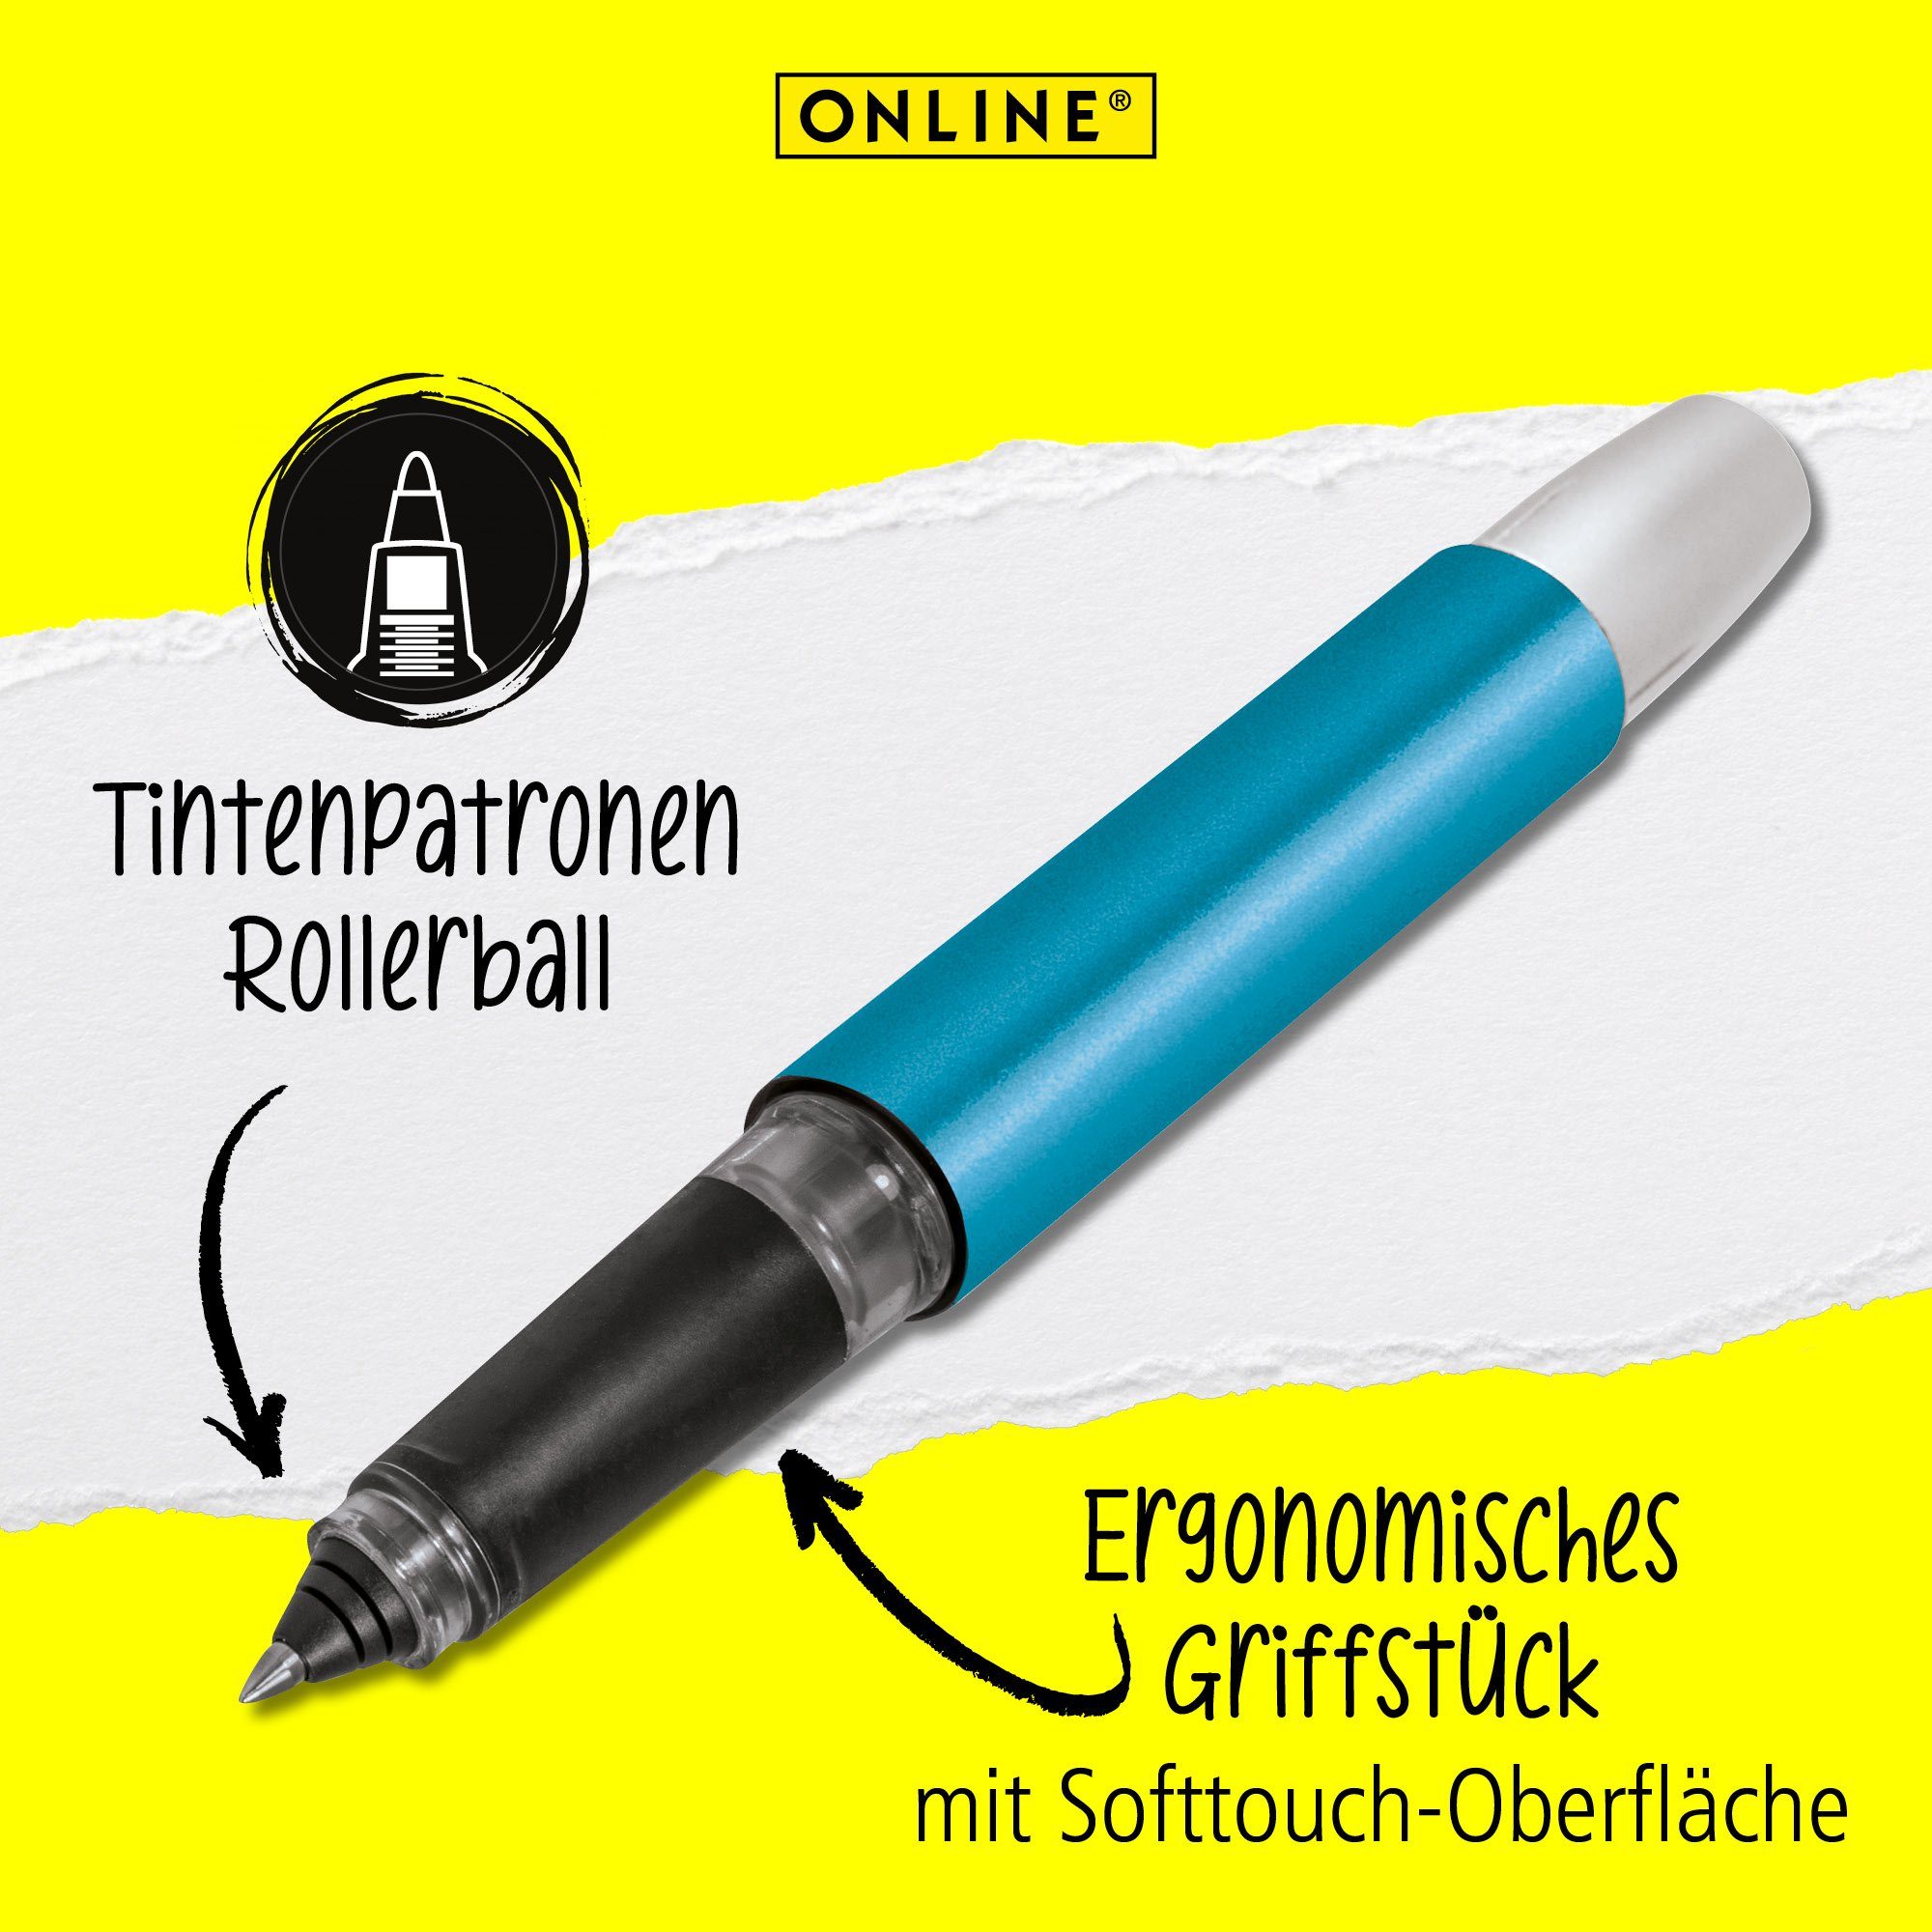 Campus ergonomisch, in Petrol die Pen Schule, Tintenroller Deutschland hergestellt Rollerball, Online ideal für